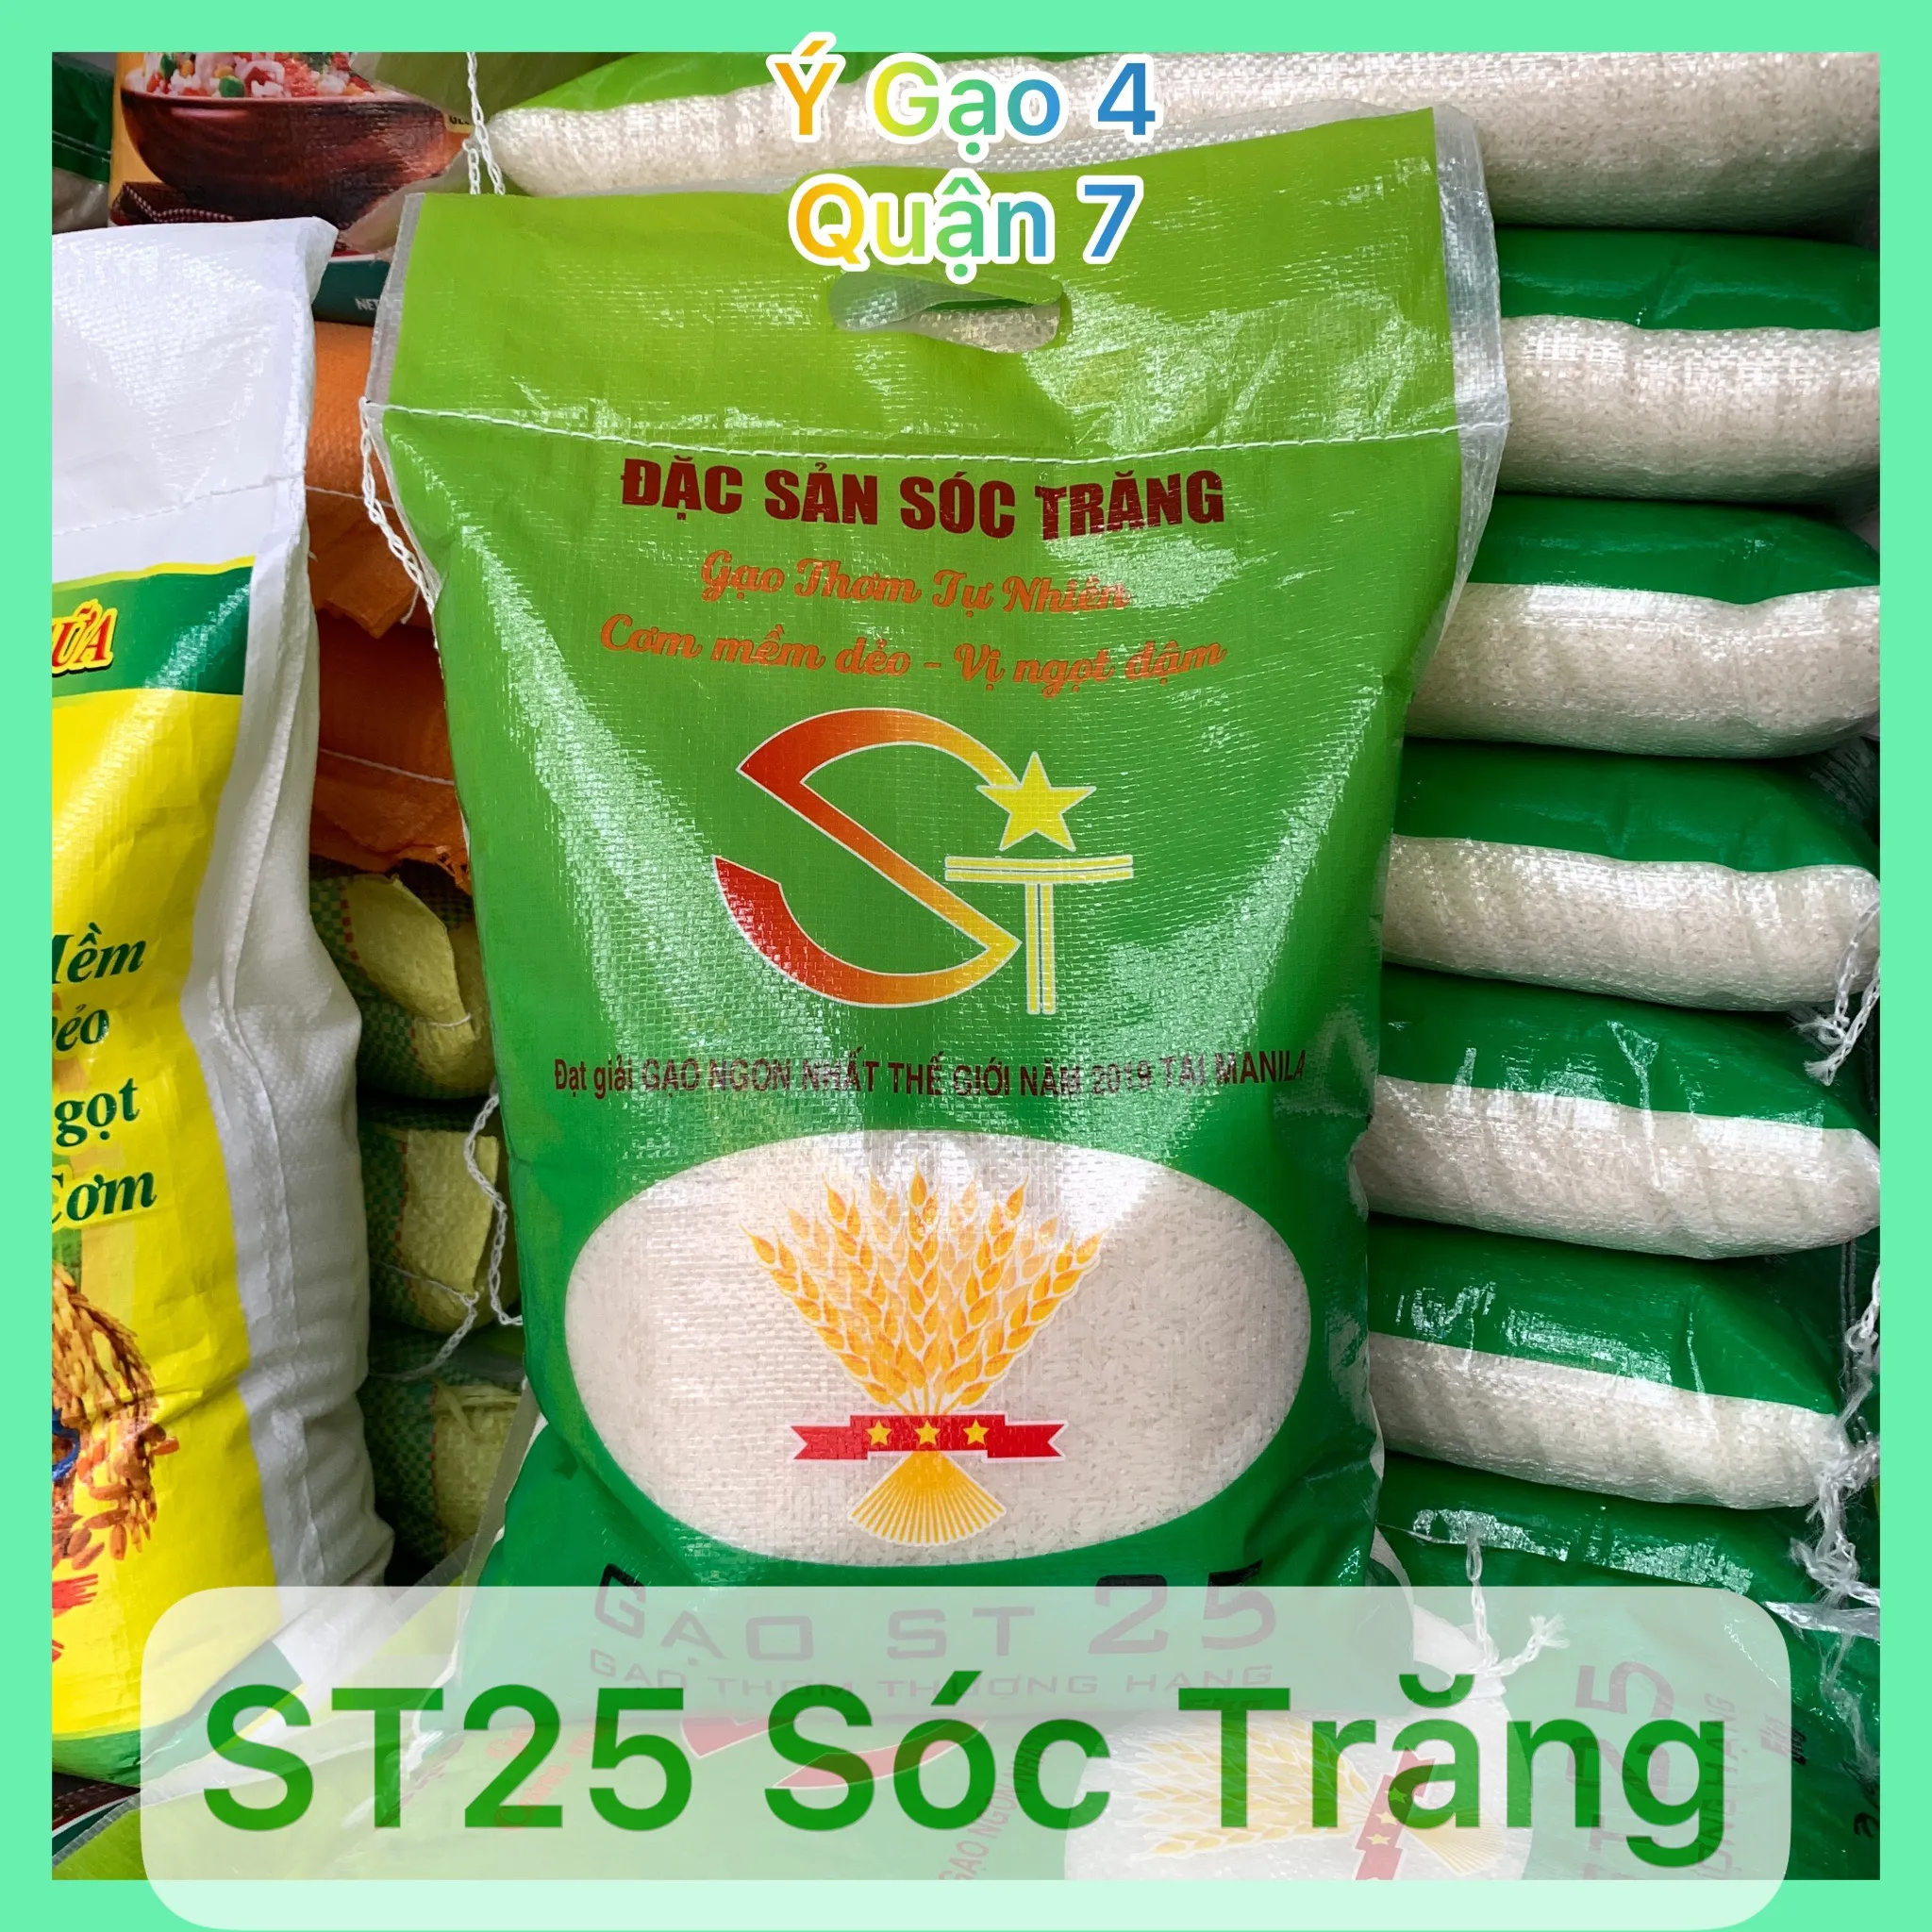 Gạo ST25 Sóc Trăng - Túi 5Kg - Giống lúa ST25 được trồng tại Sóc Trăng, đều hạt, dẻo vừa, ngọt thơm cơm dù cho cơm đã nguội